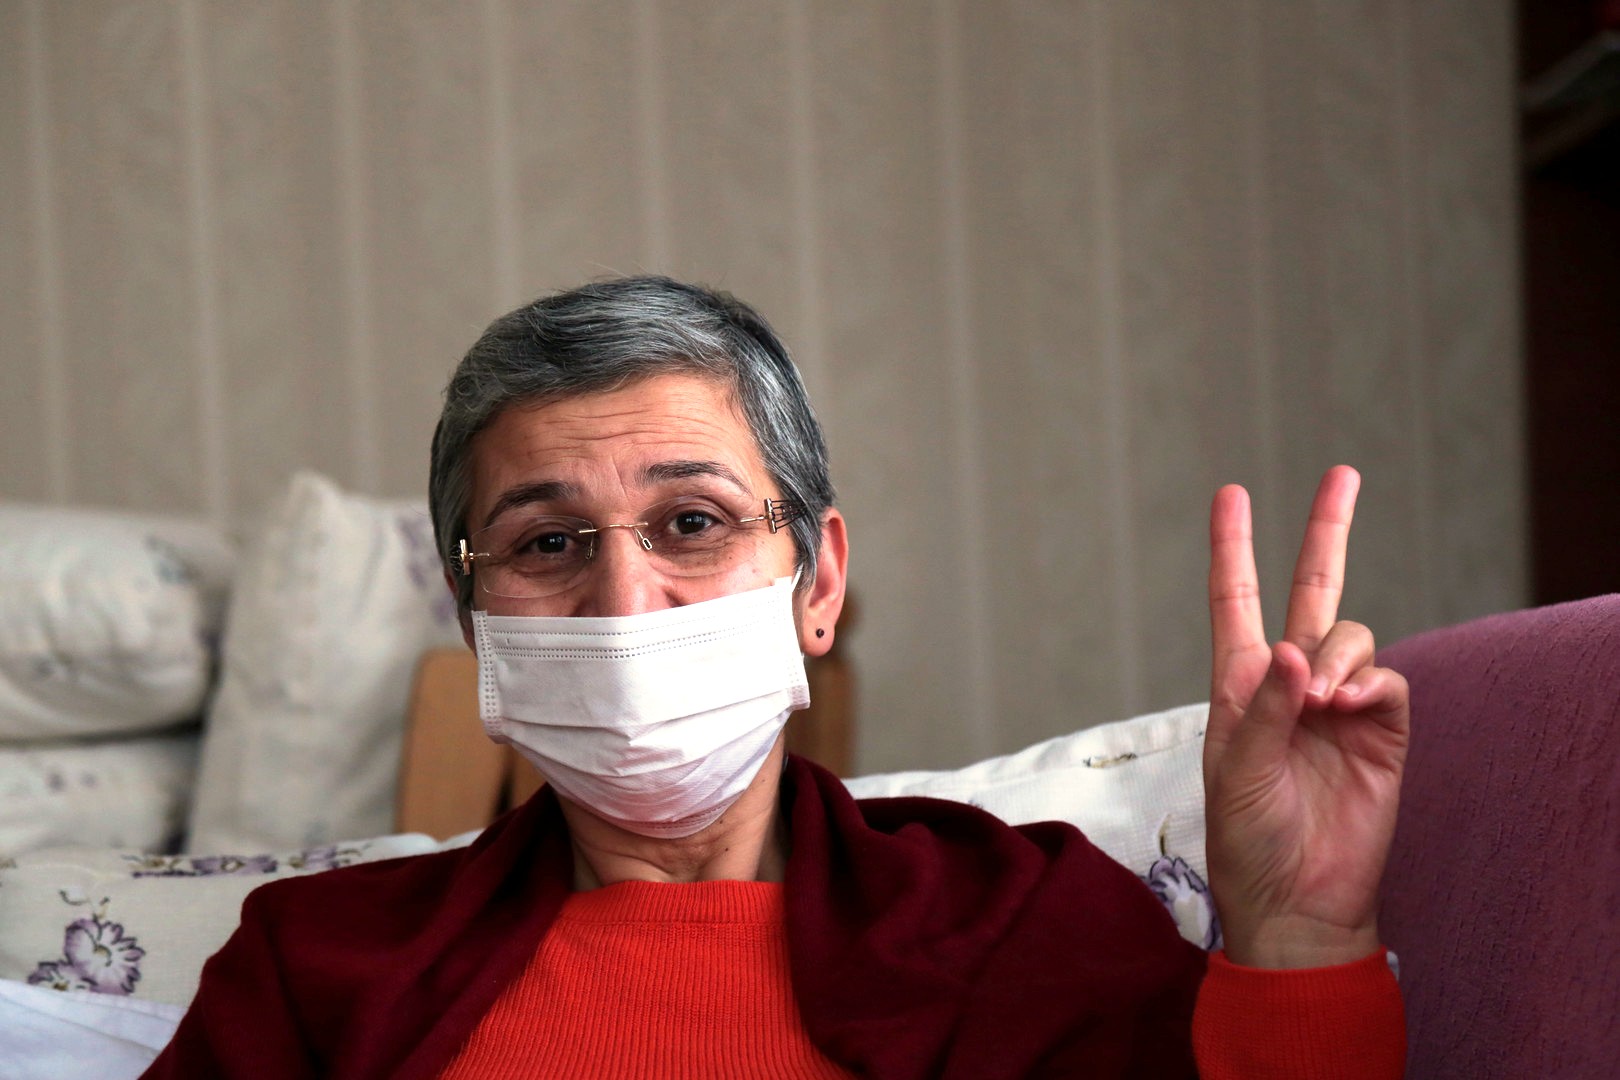 ليلى غوفين النائبة الكردية المفرج عنها تواصل معركة الأمعاء الخاوية